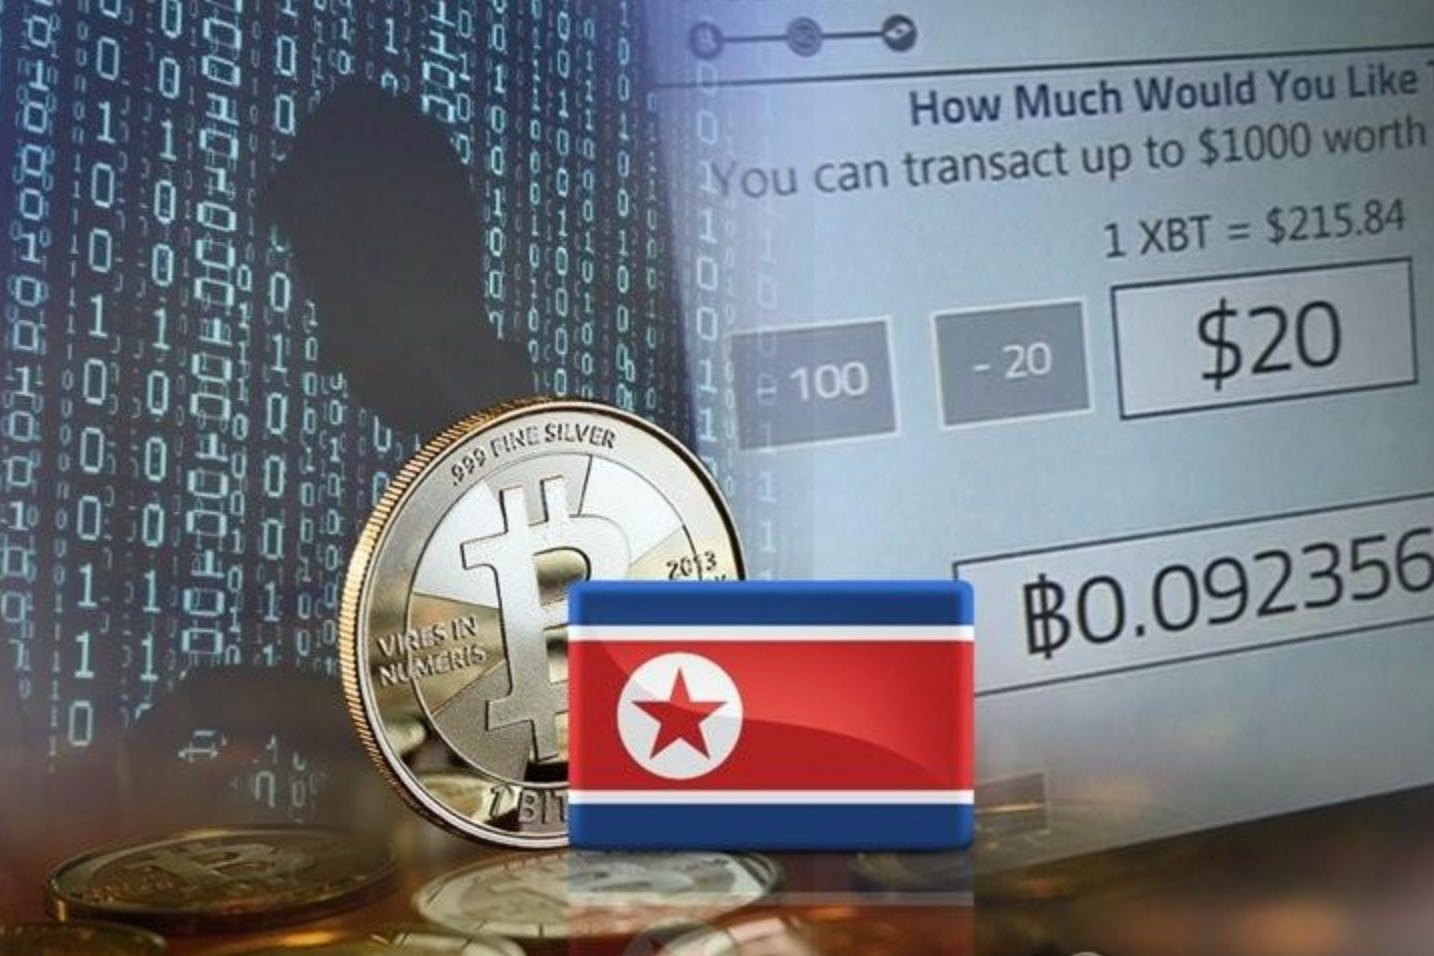 美報告稱北韓去年通過黑客
 竊取近4億美元加密貨幣